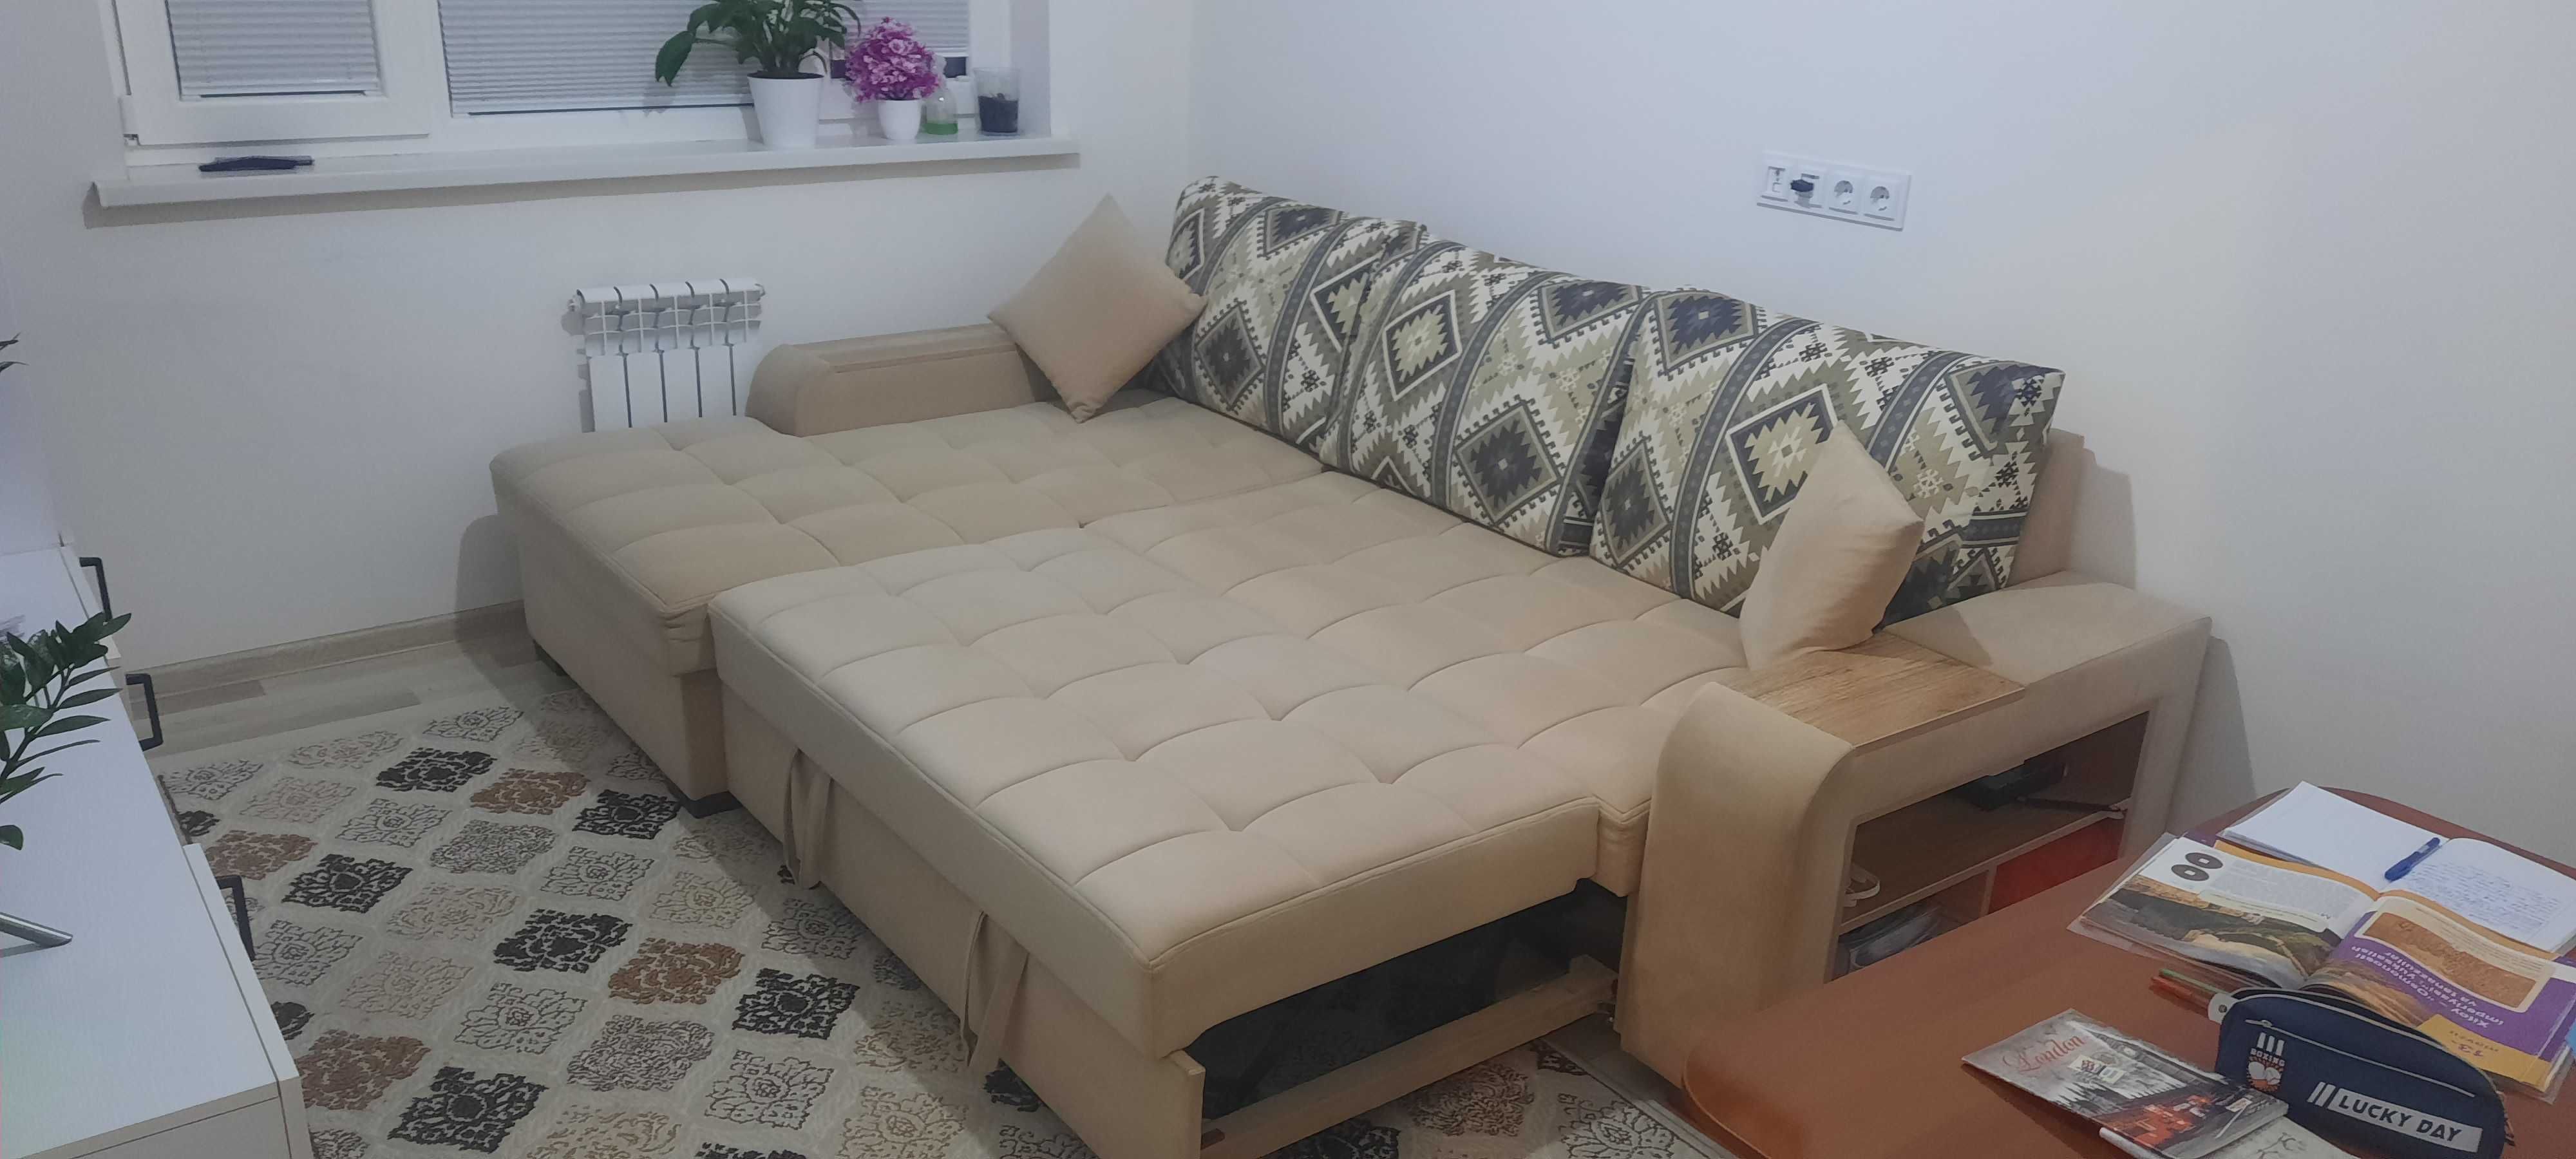 Продаётся диван. Турецкого производства. 2,5 × 1,7